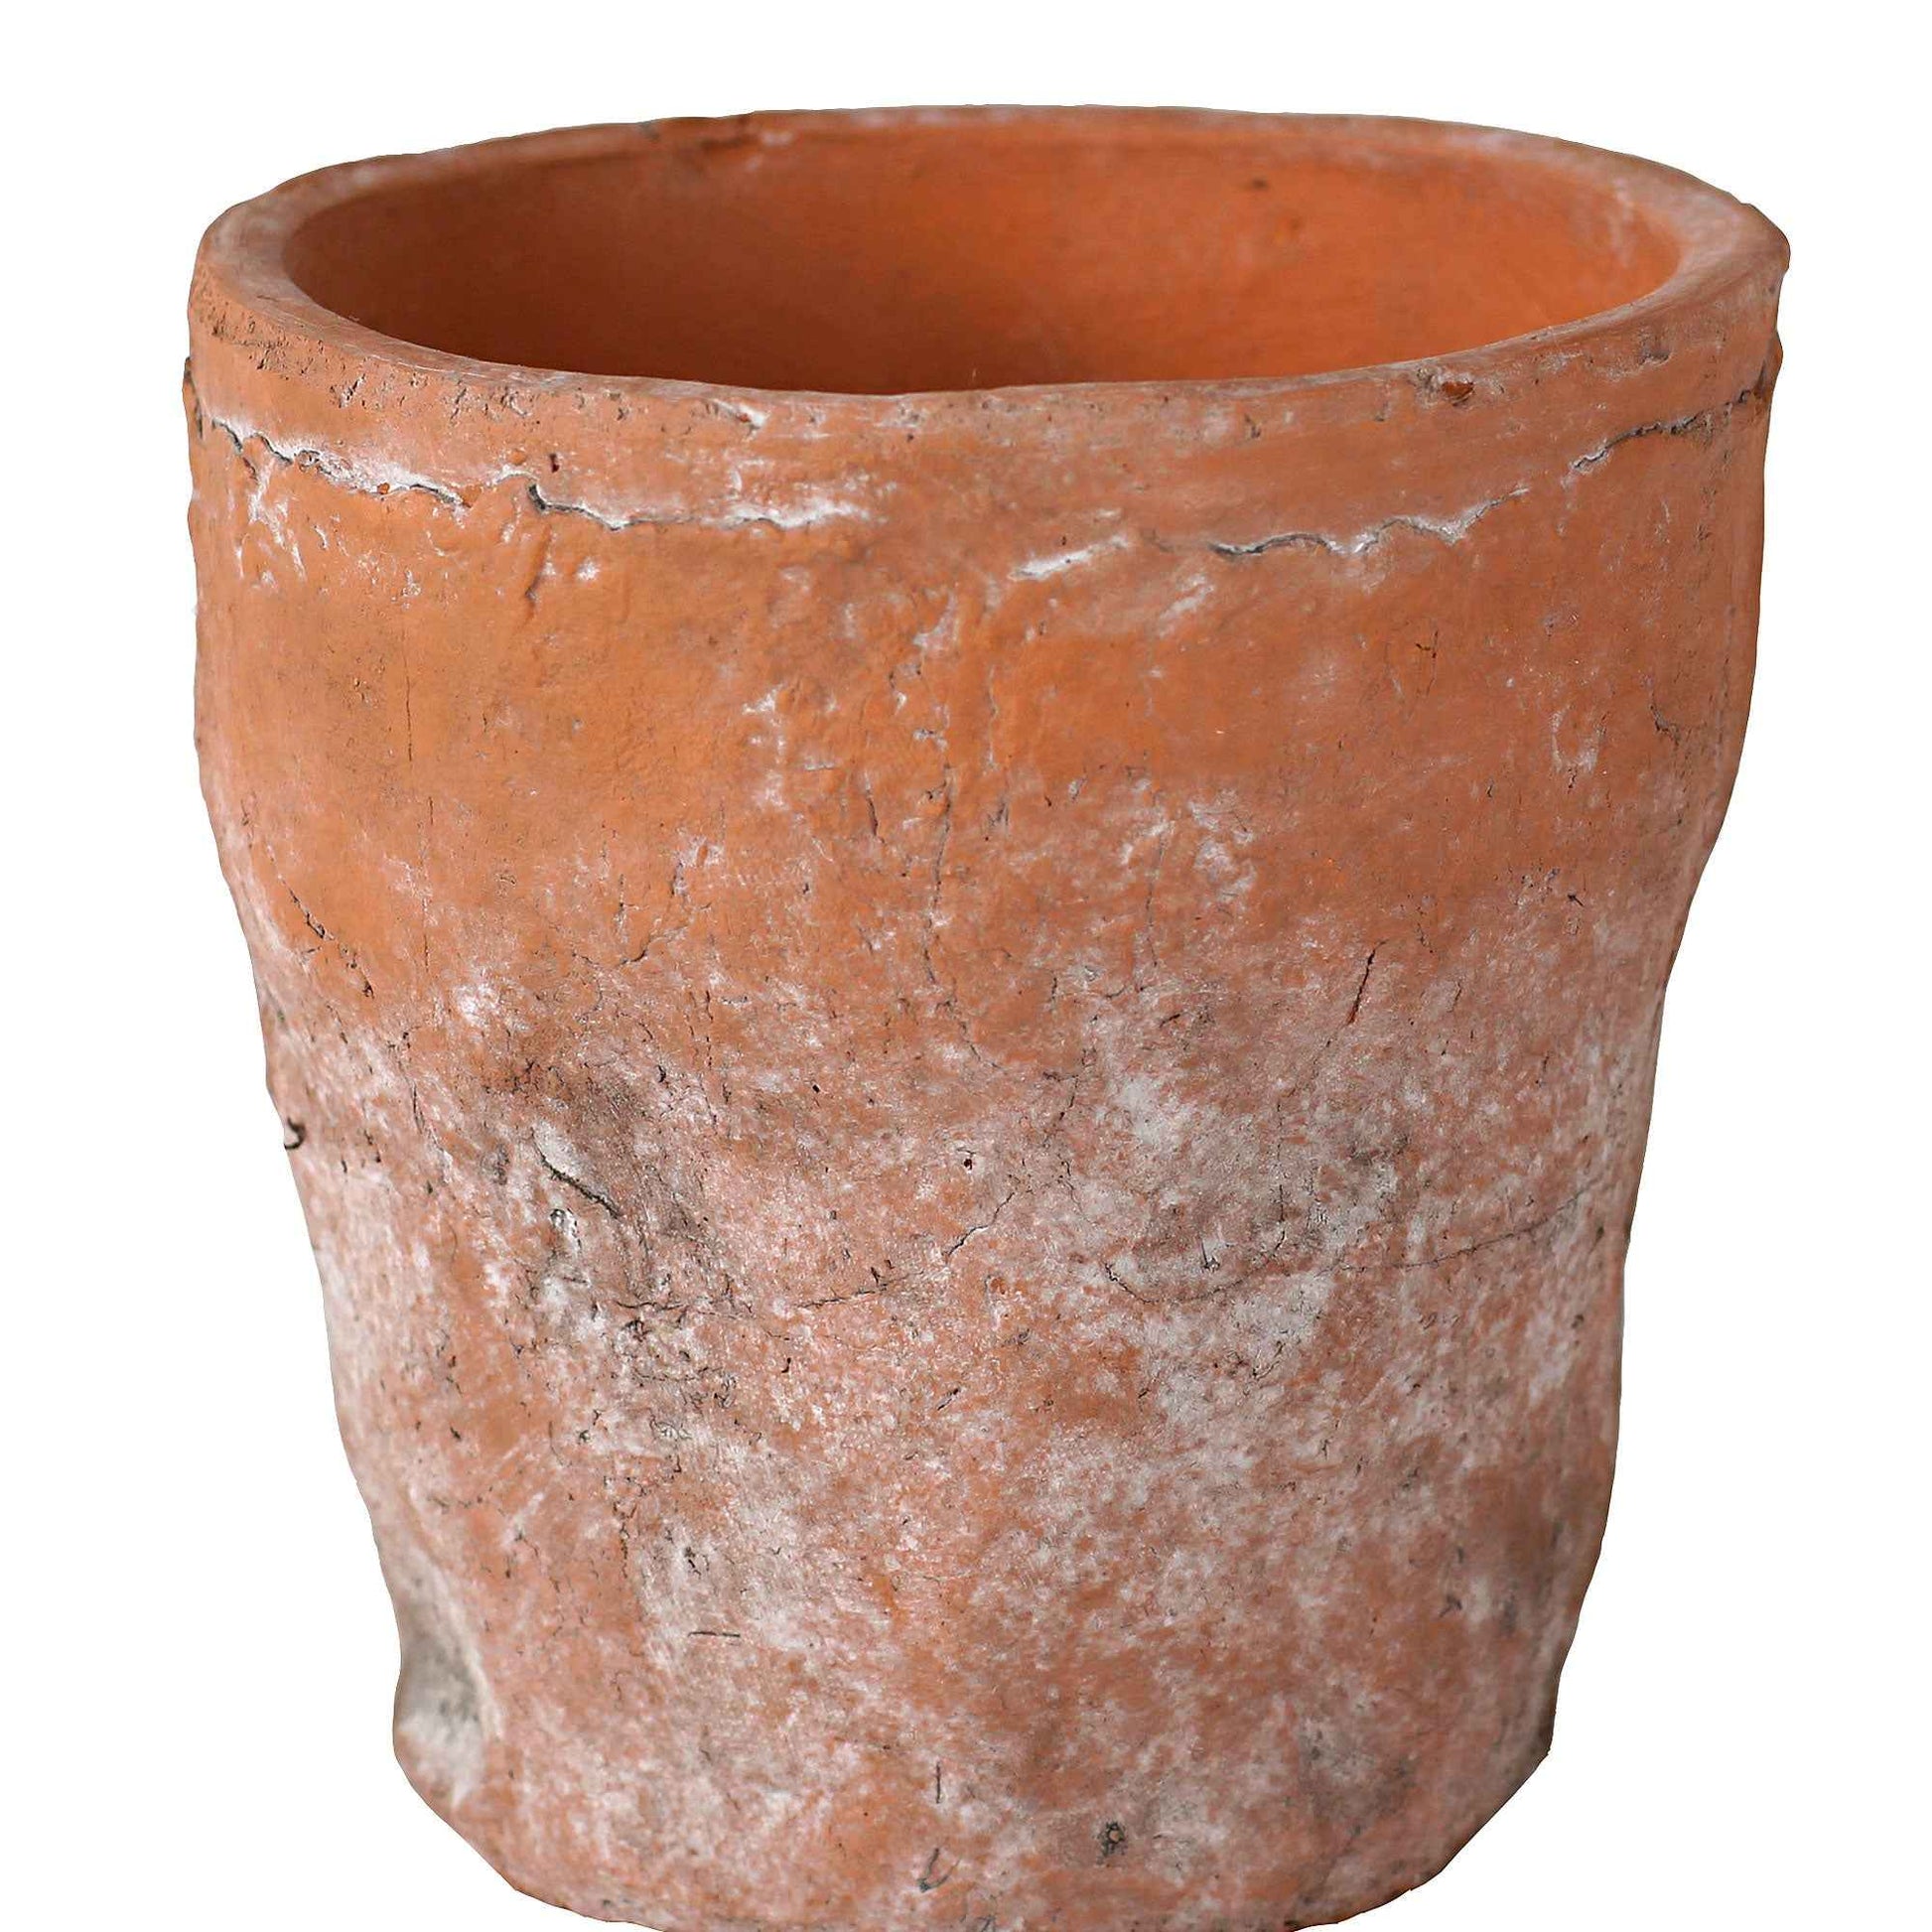 TS pot de fleurs Nature rond terre cuite - Pot pour l'intérieur - Pots d'intérieur naturels